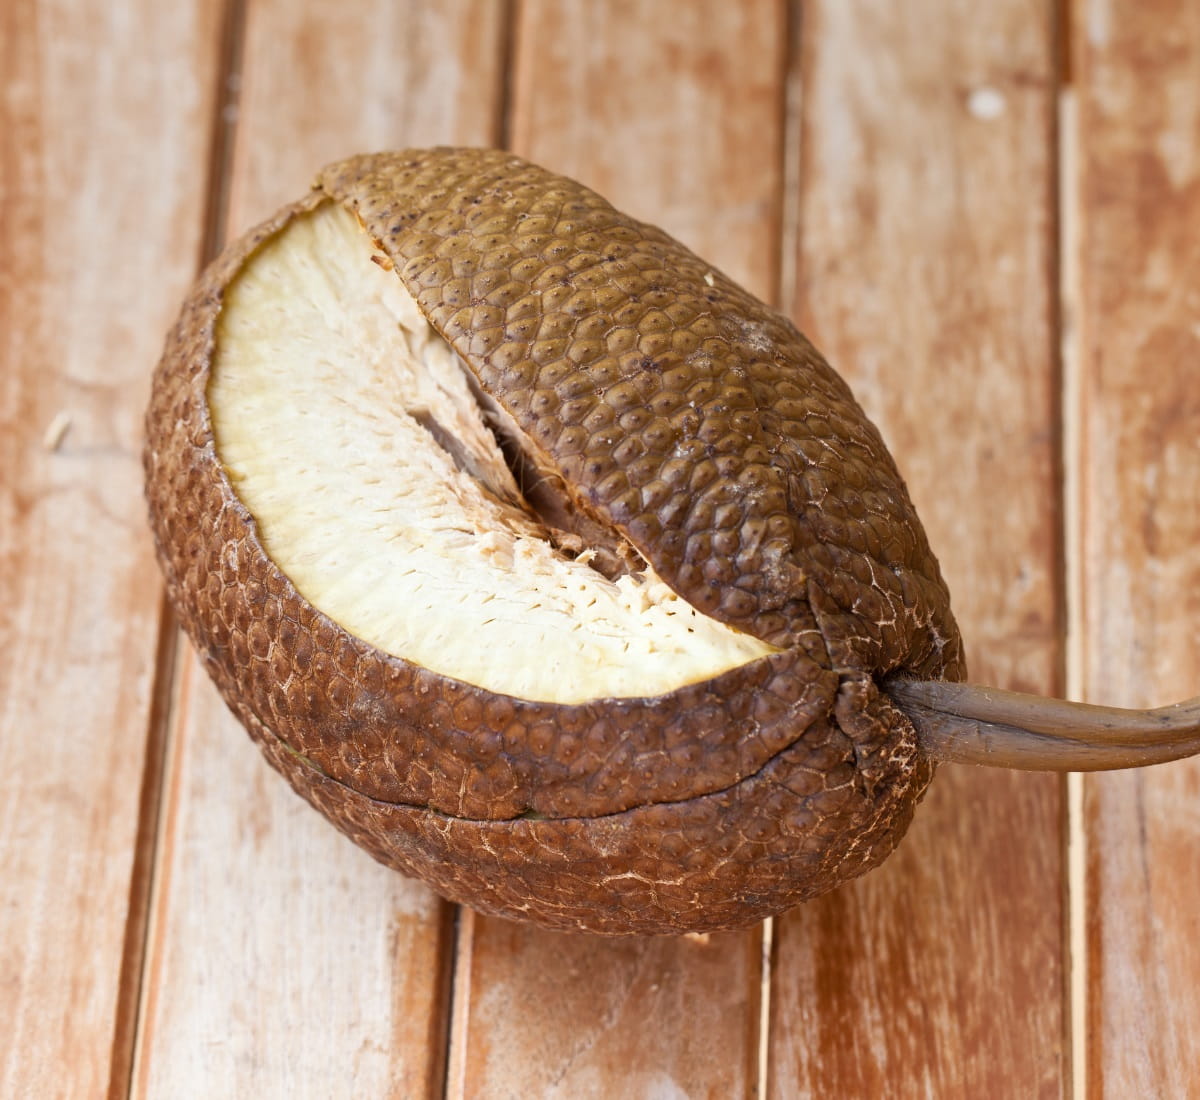 Baked breadfruit